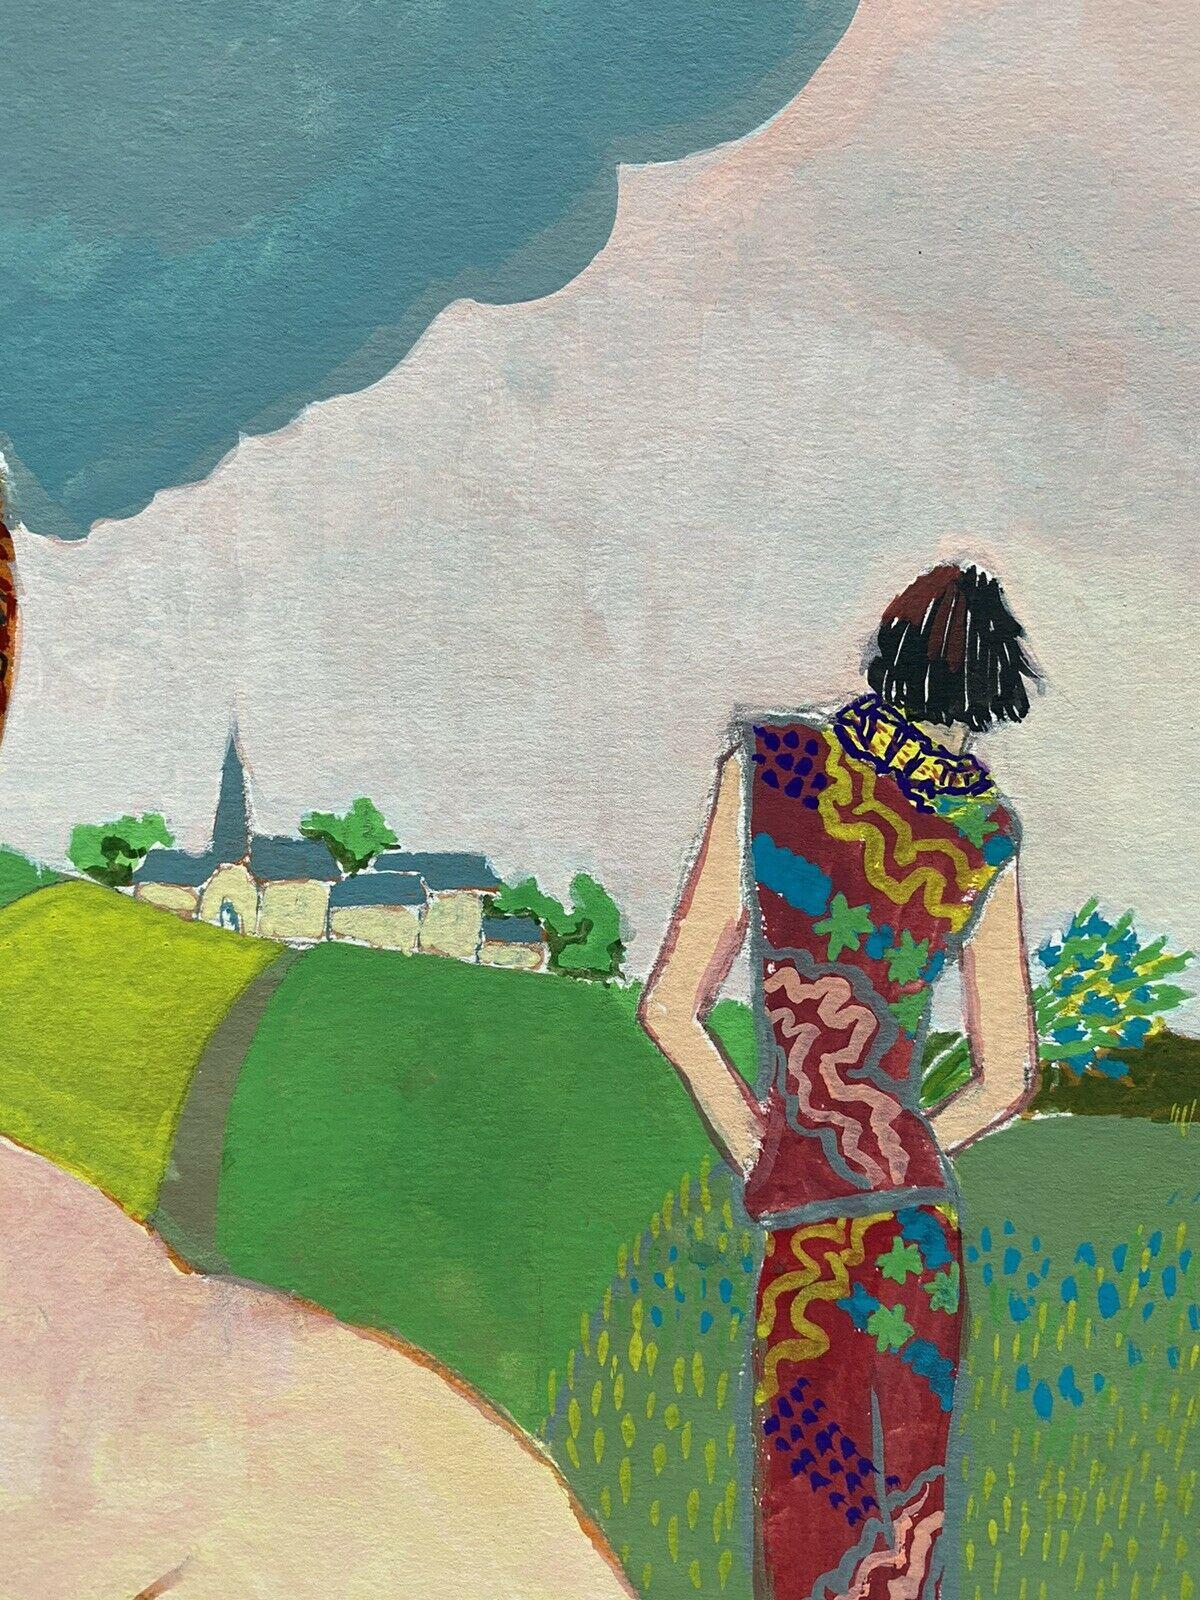 HOMME SEMI-NU avec taureau dans un paysage - PEINTURE MODERNISTE FRANÇAISE DU 20e SIÈCLE - Moderne Painting par Jean Marc